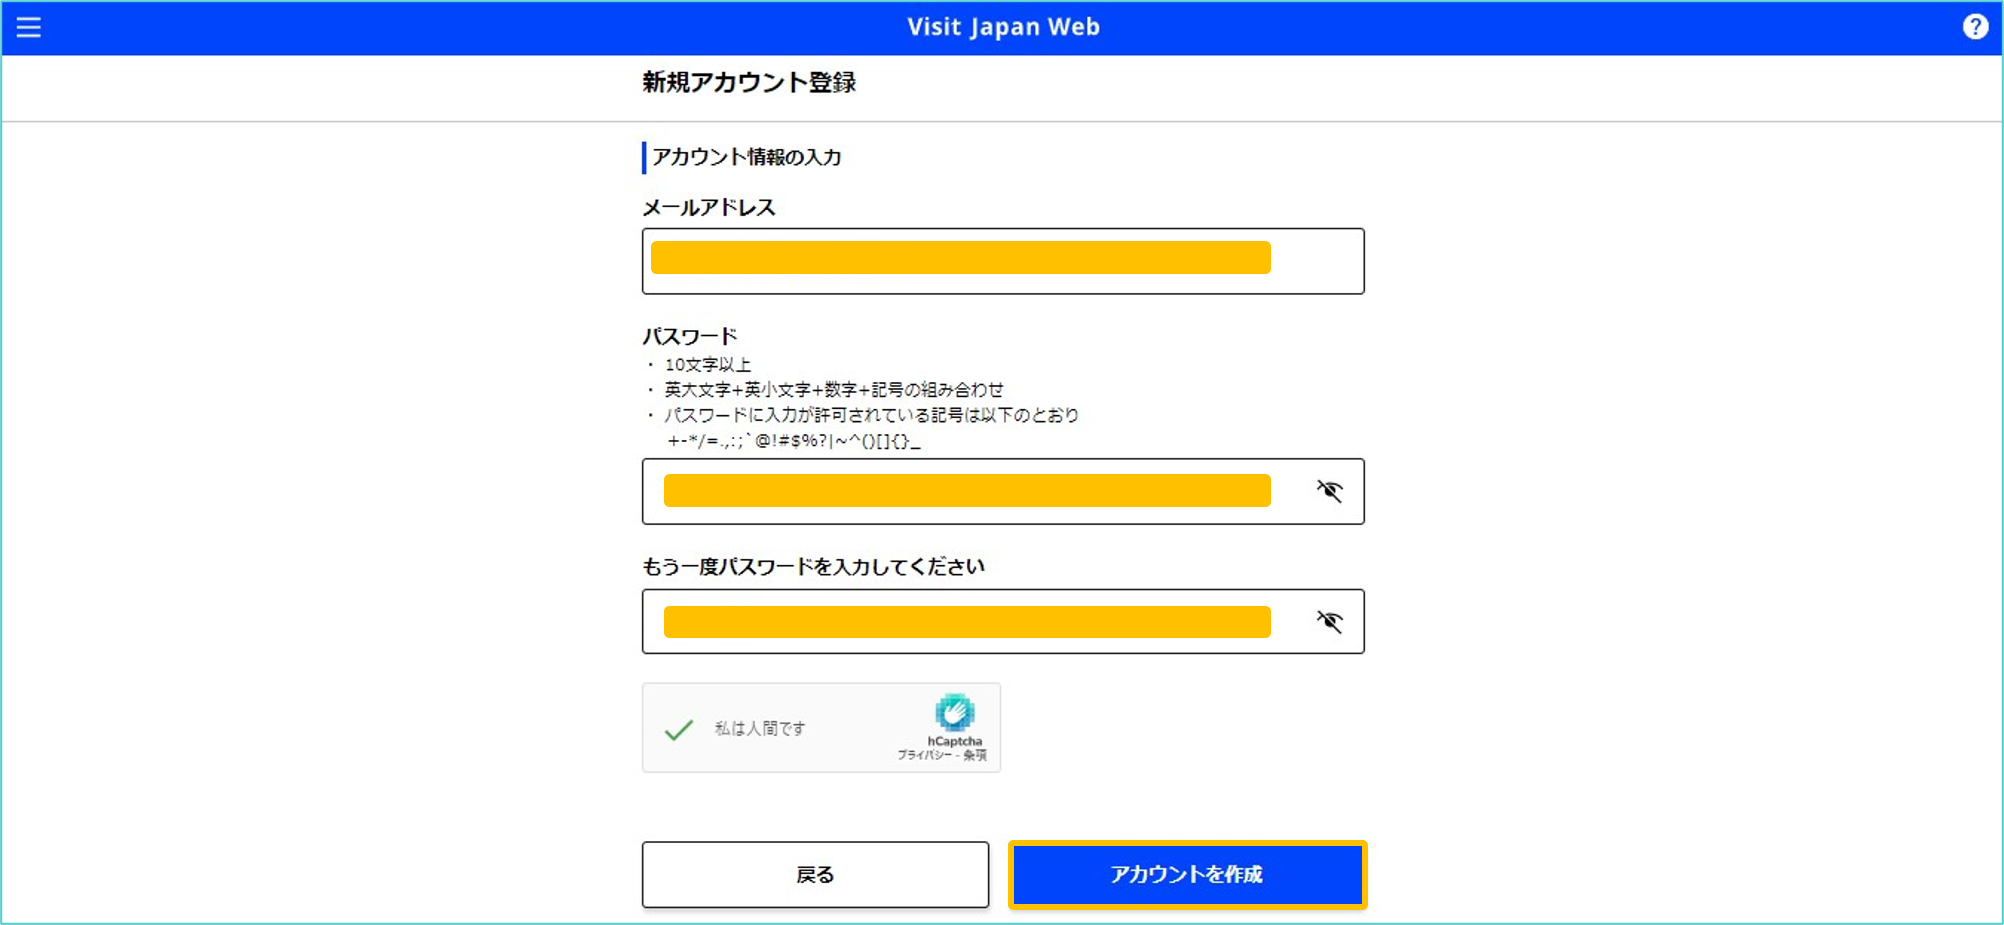 visit japan web 登録方法